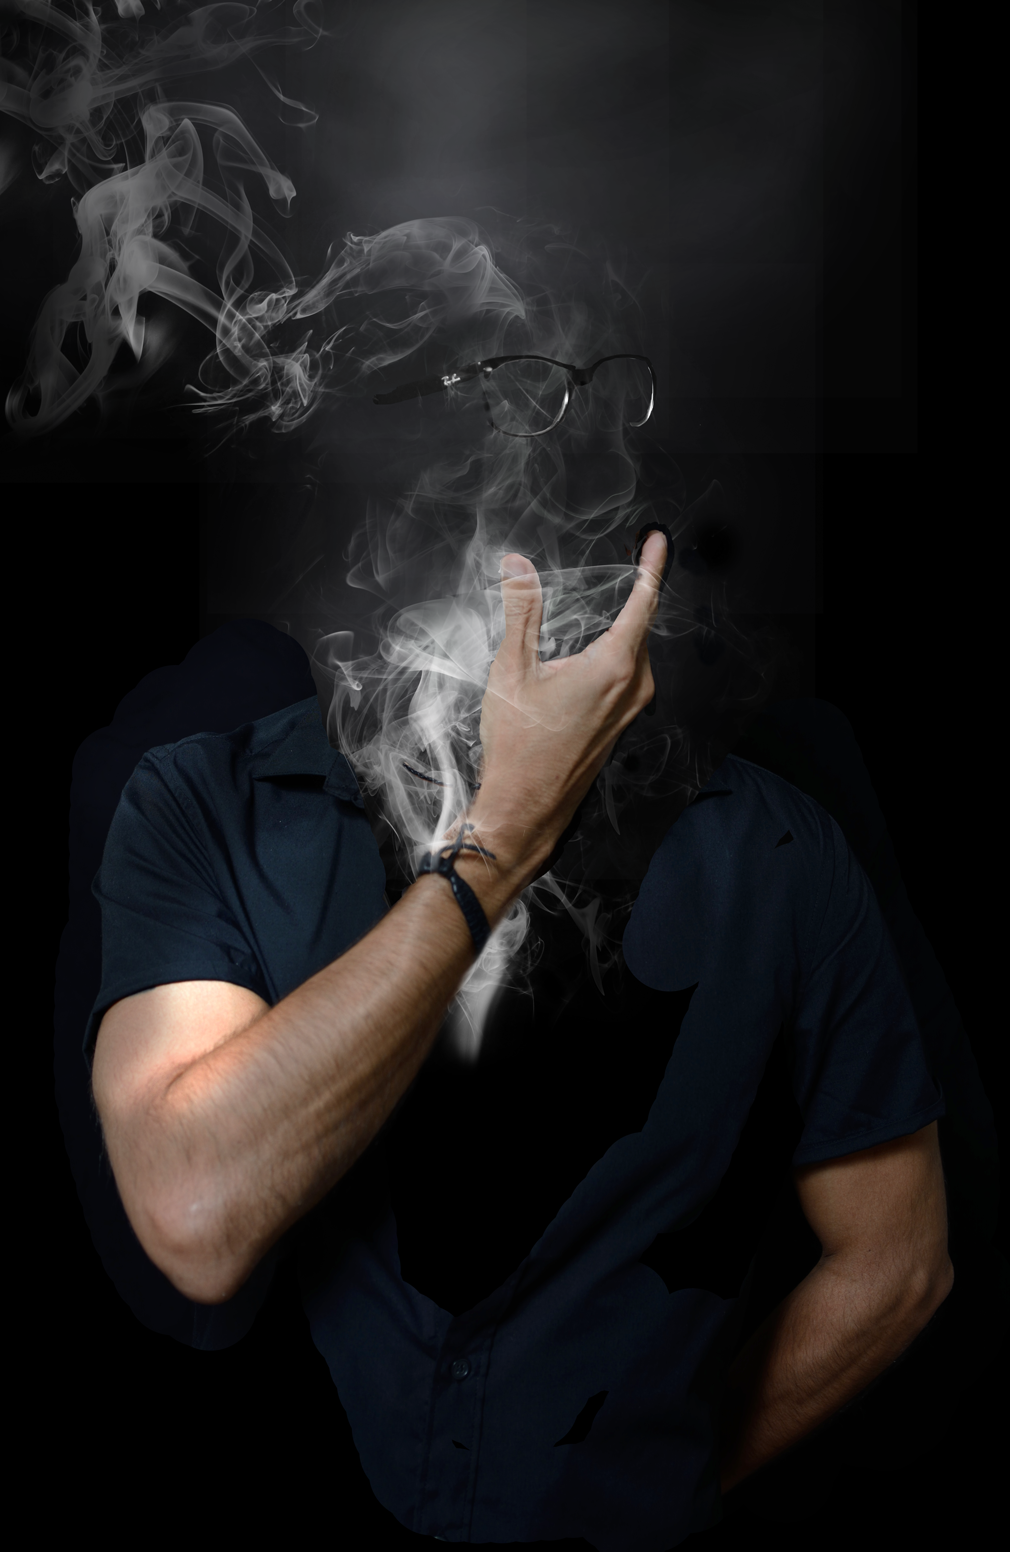 Профиль для ватсапа для мужчин. Мужчина в дыму. Лицо в дыму. Мужской портрет с дымом. Мужское лицо в дыму.